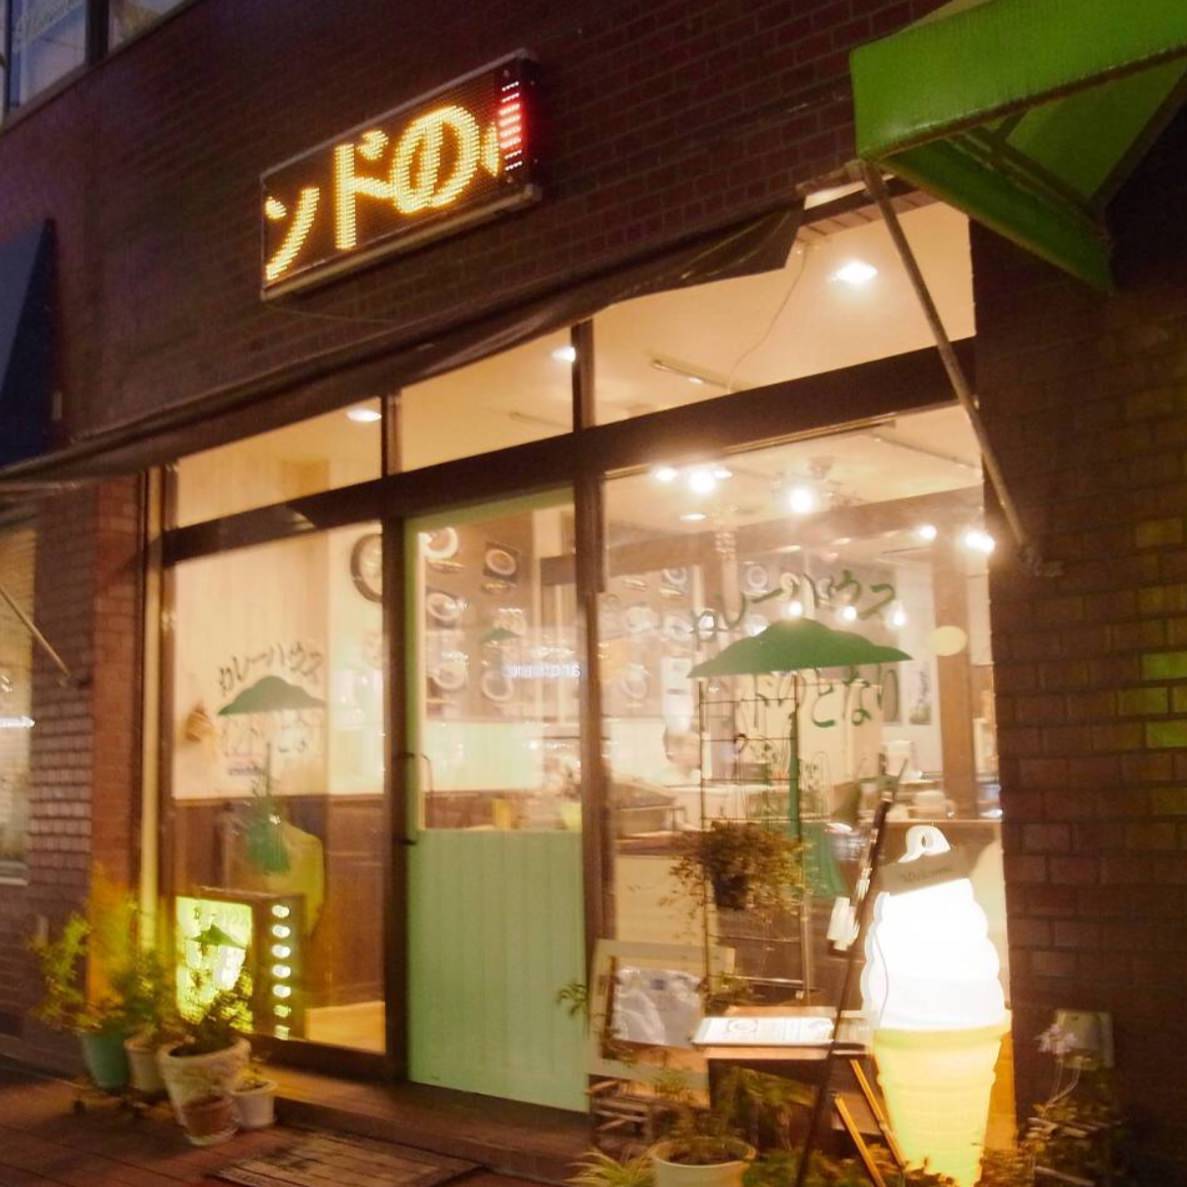 2021年 最新グルメ 溝の口 たまプラーザ 青葉台にある外国人が喜ばれるお店 レストラン カフェ 居酒屋のネット予約 神奈川版